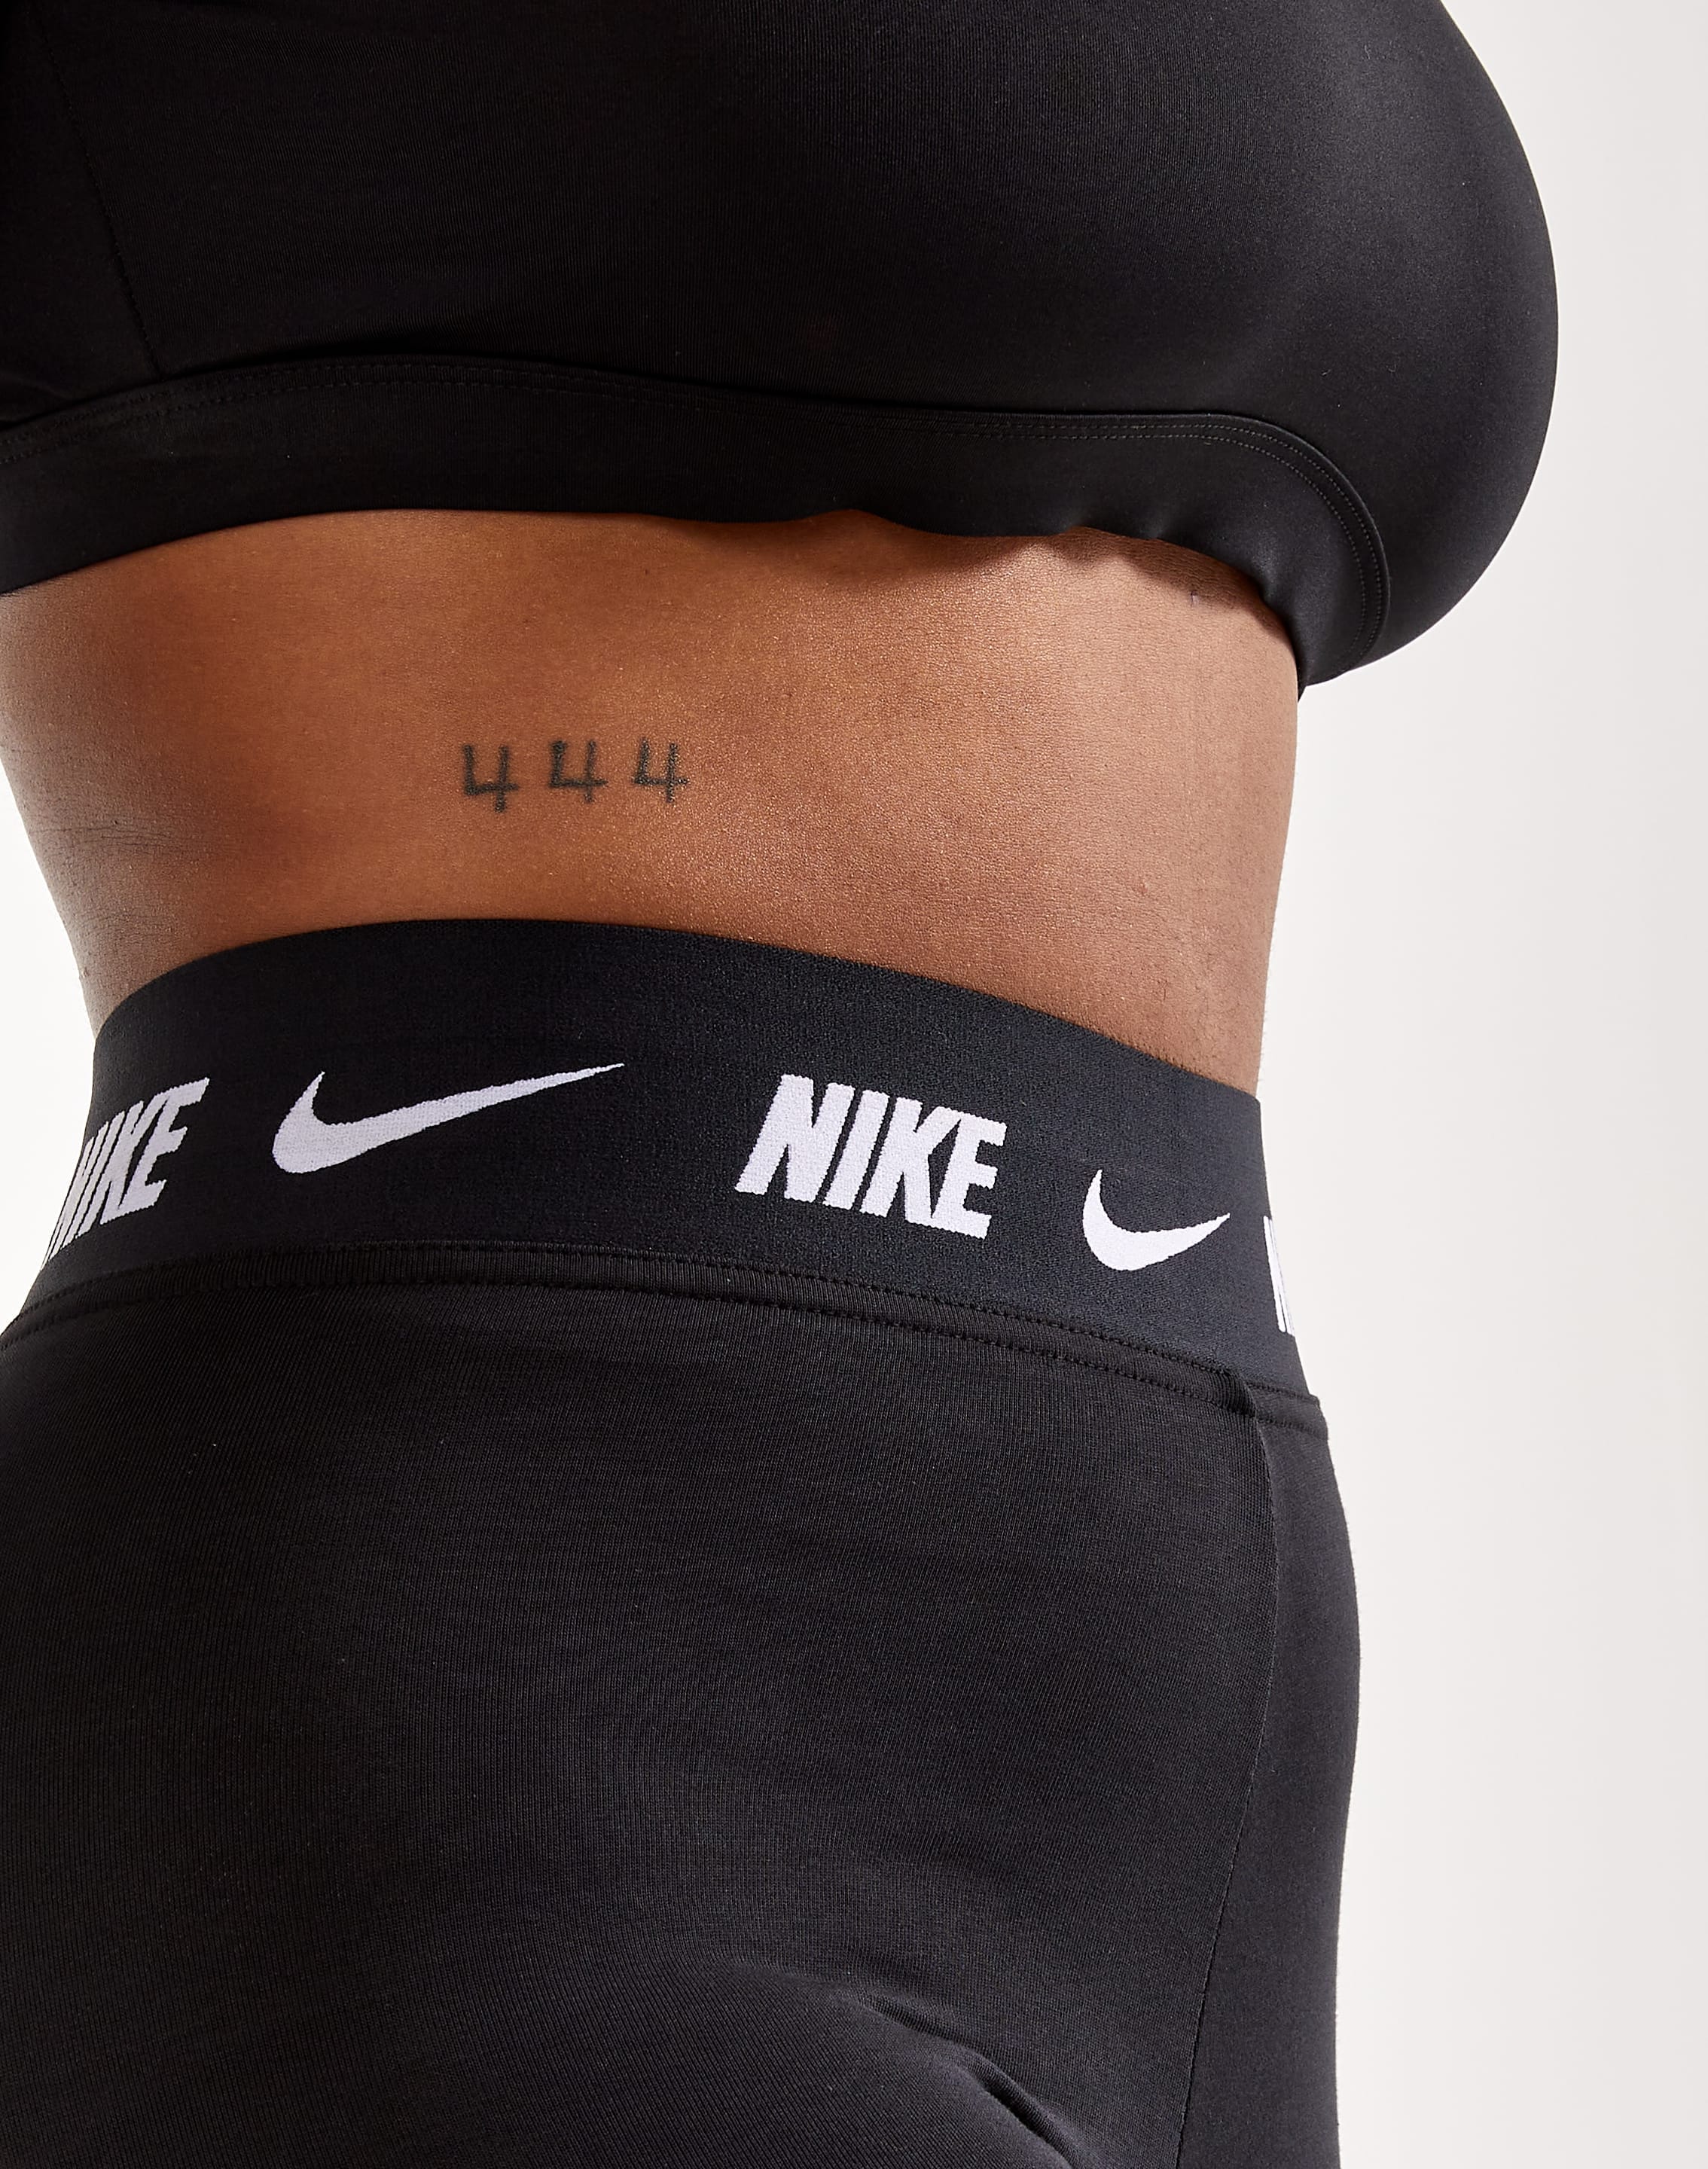 Nike Sportswear NSW Women’s Allover Print Leggings AR9856-010; Size XL 